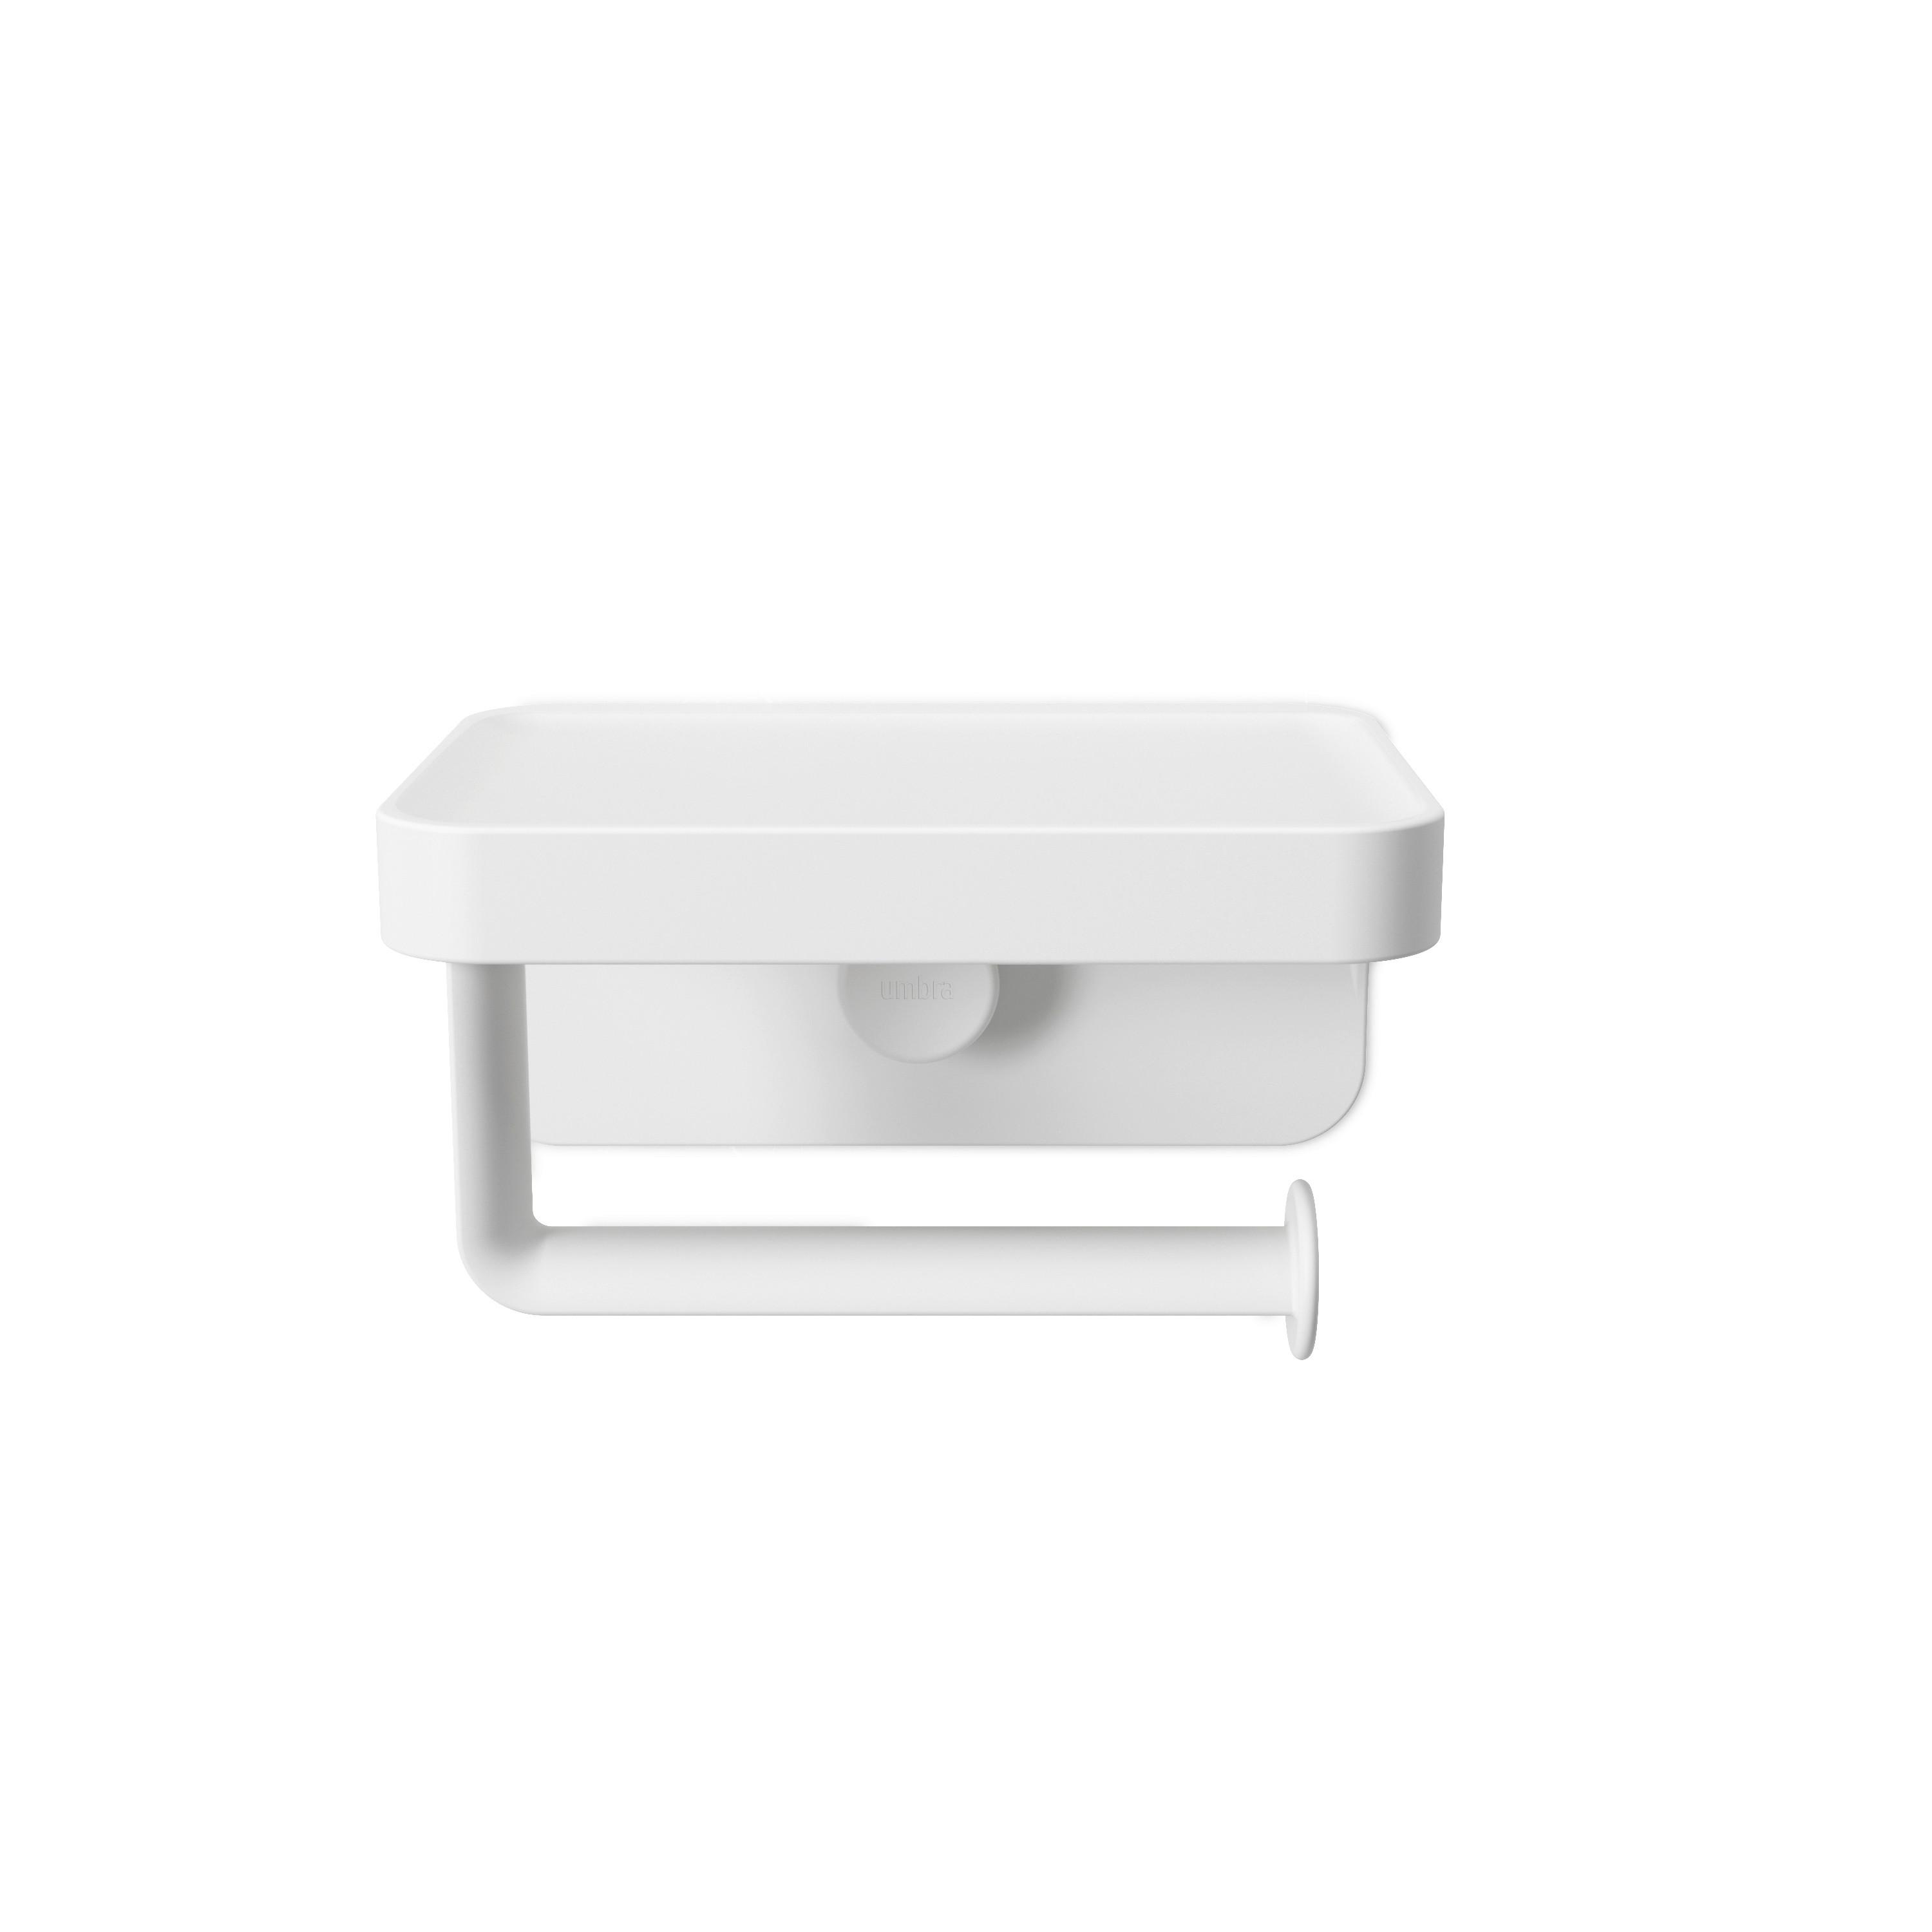 Wc-papír Tartó Easy - Fehér, modern, Műanyag (16/12/9cm) - Premium Living